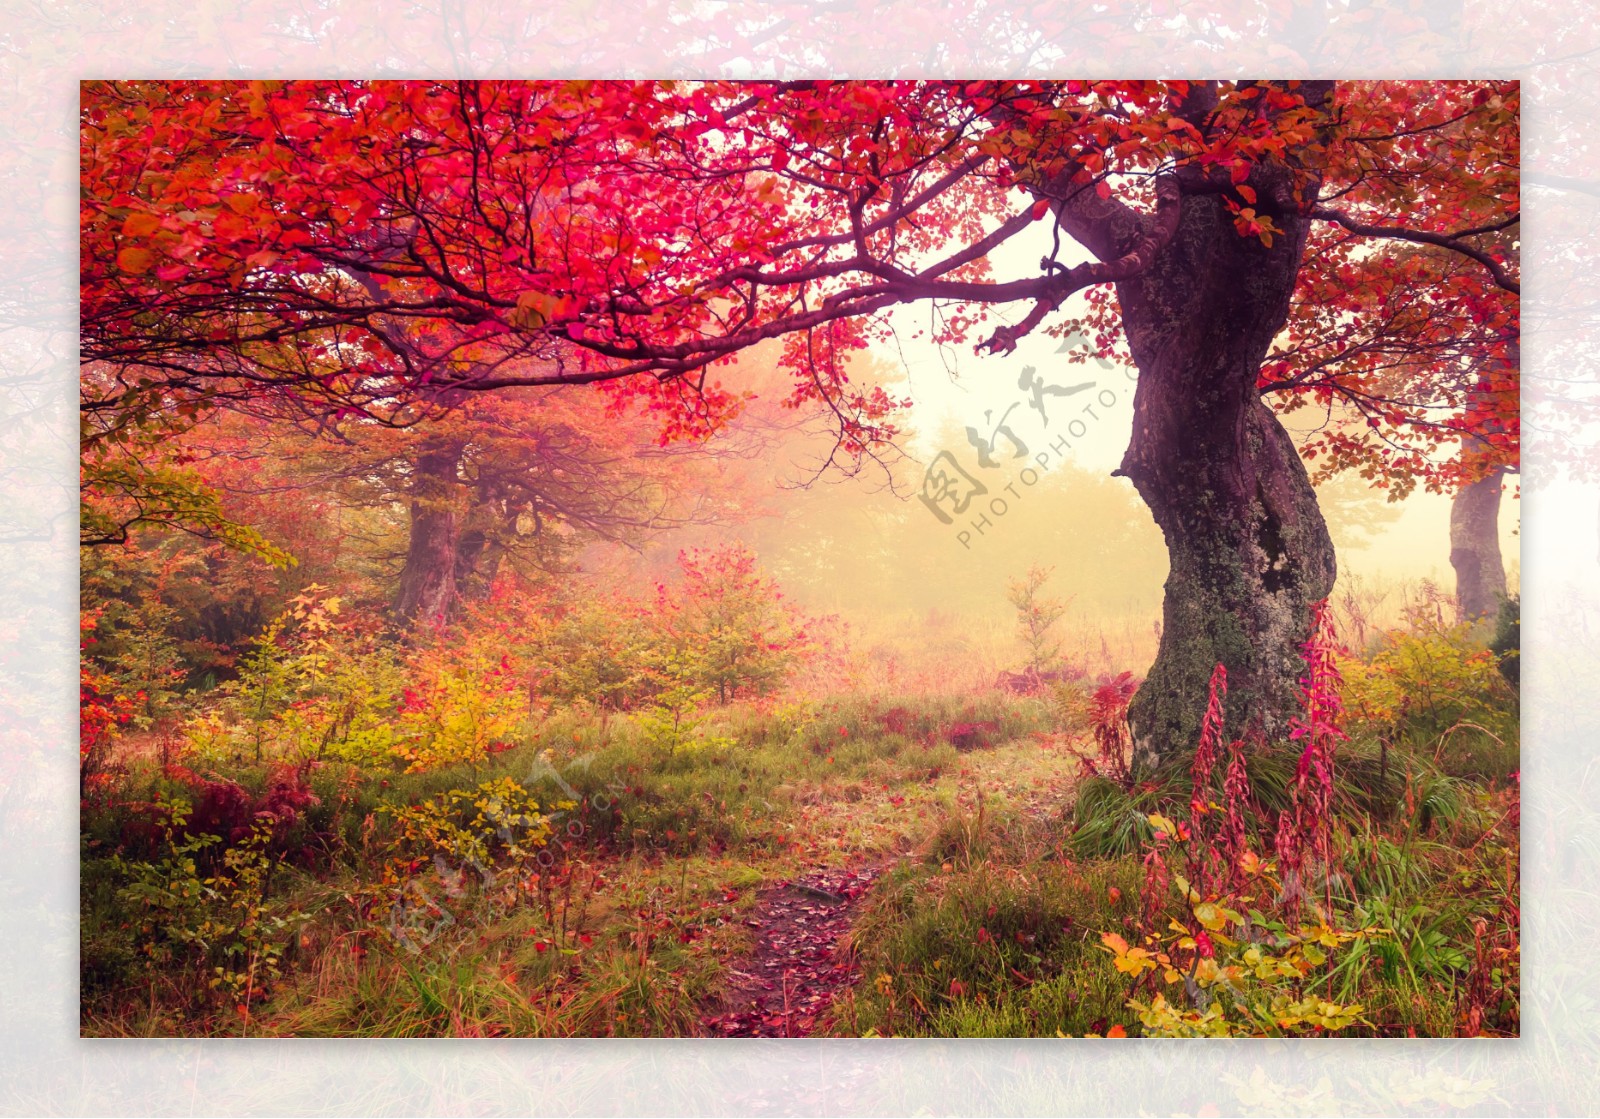 秋天枫树林风景